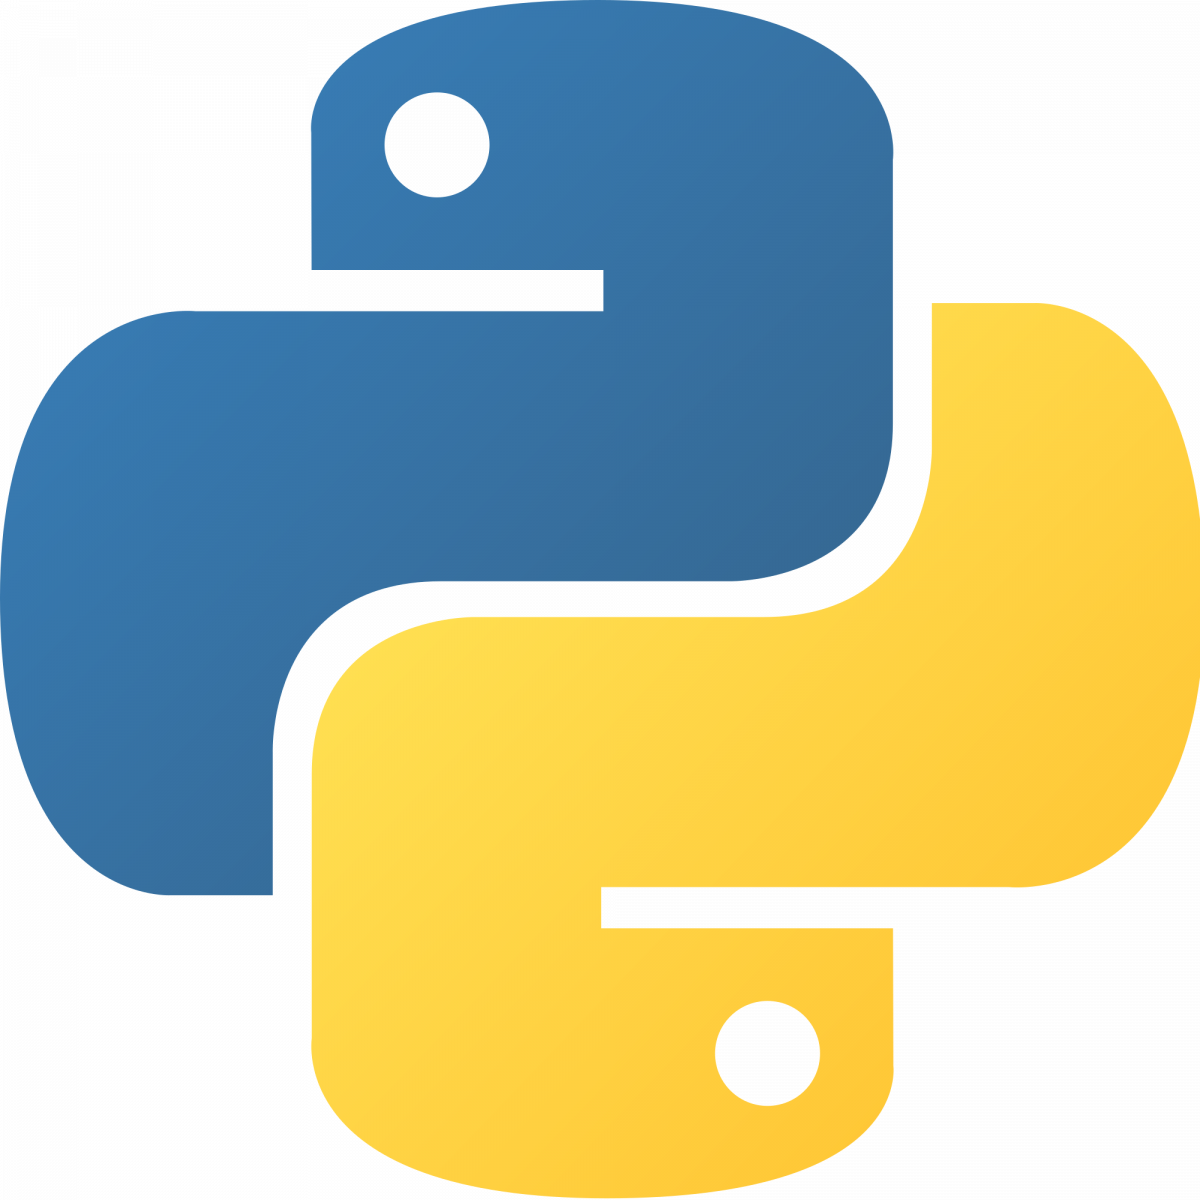 Tech Stack Modell Aachen: Python